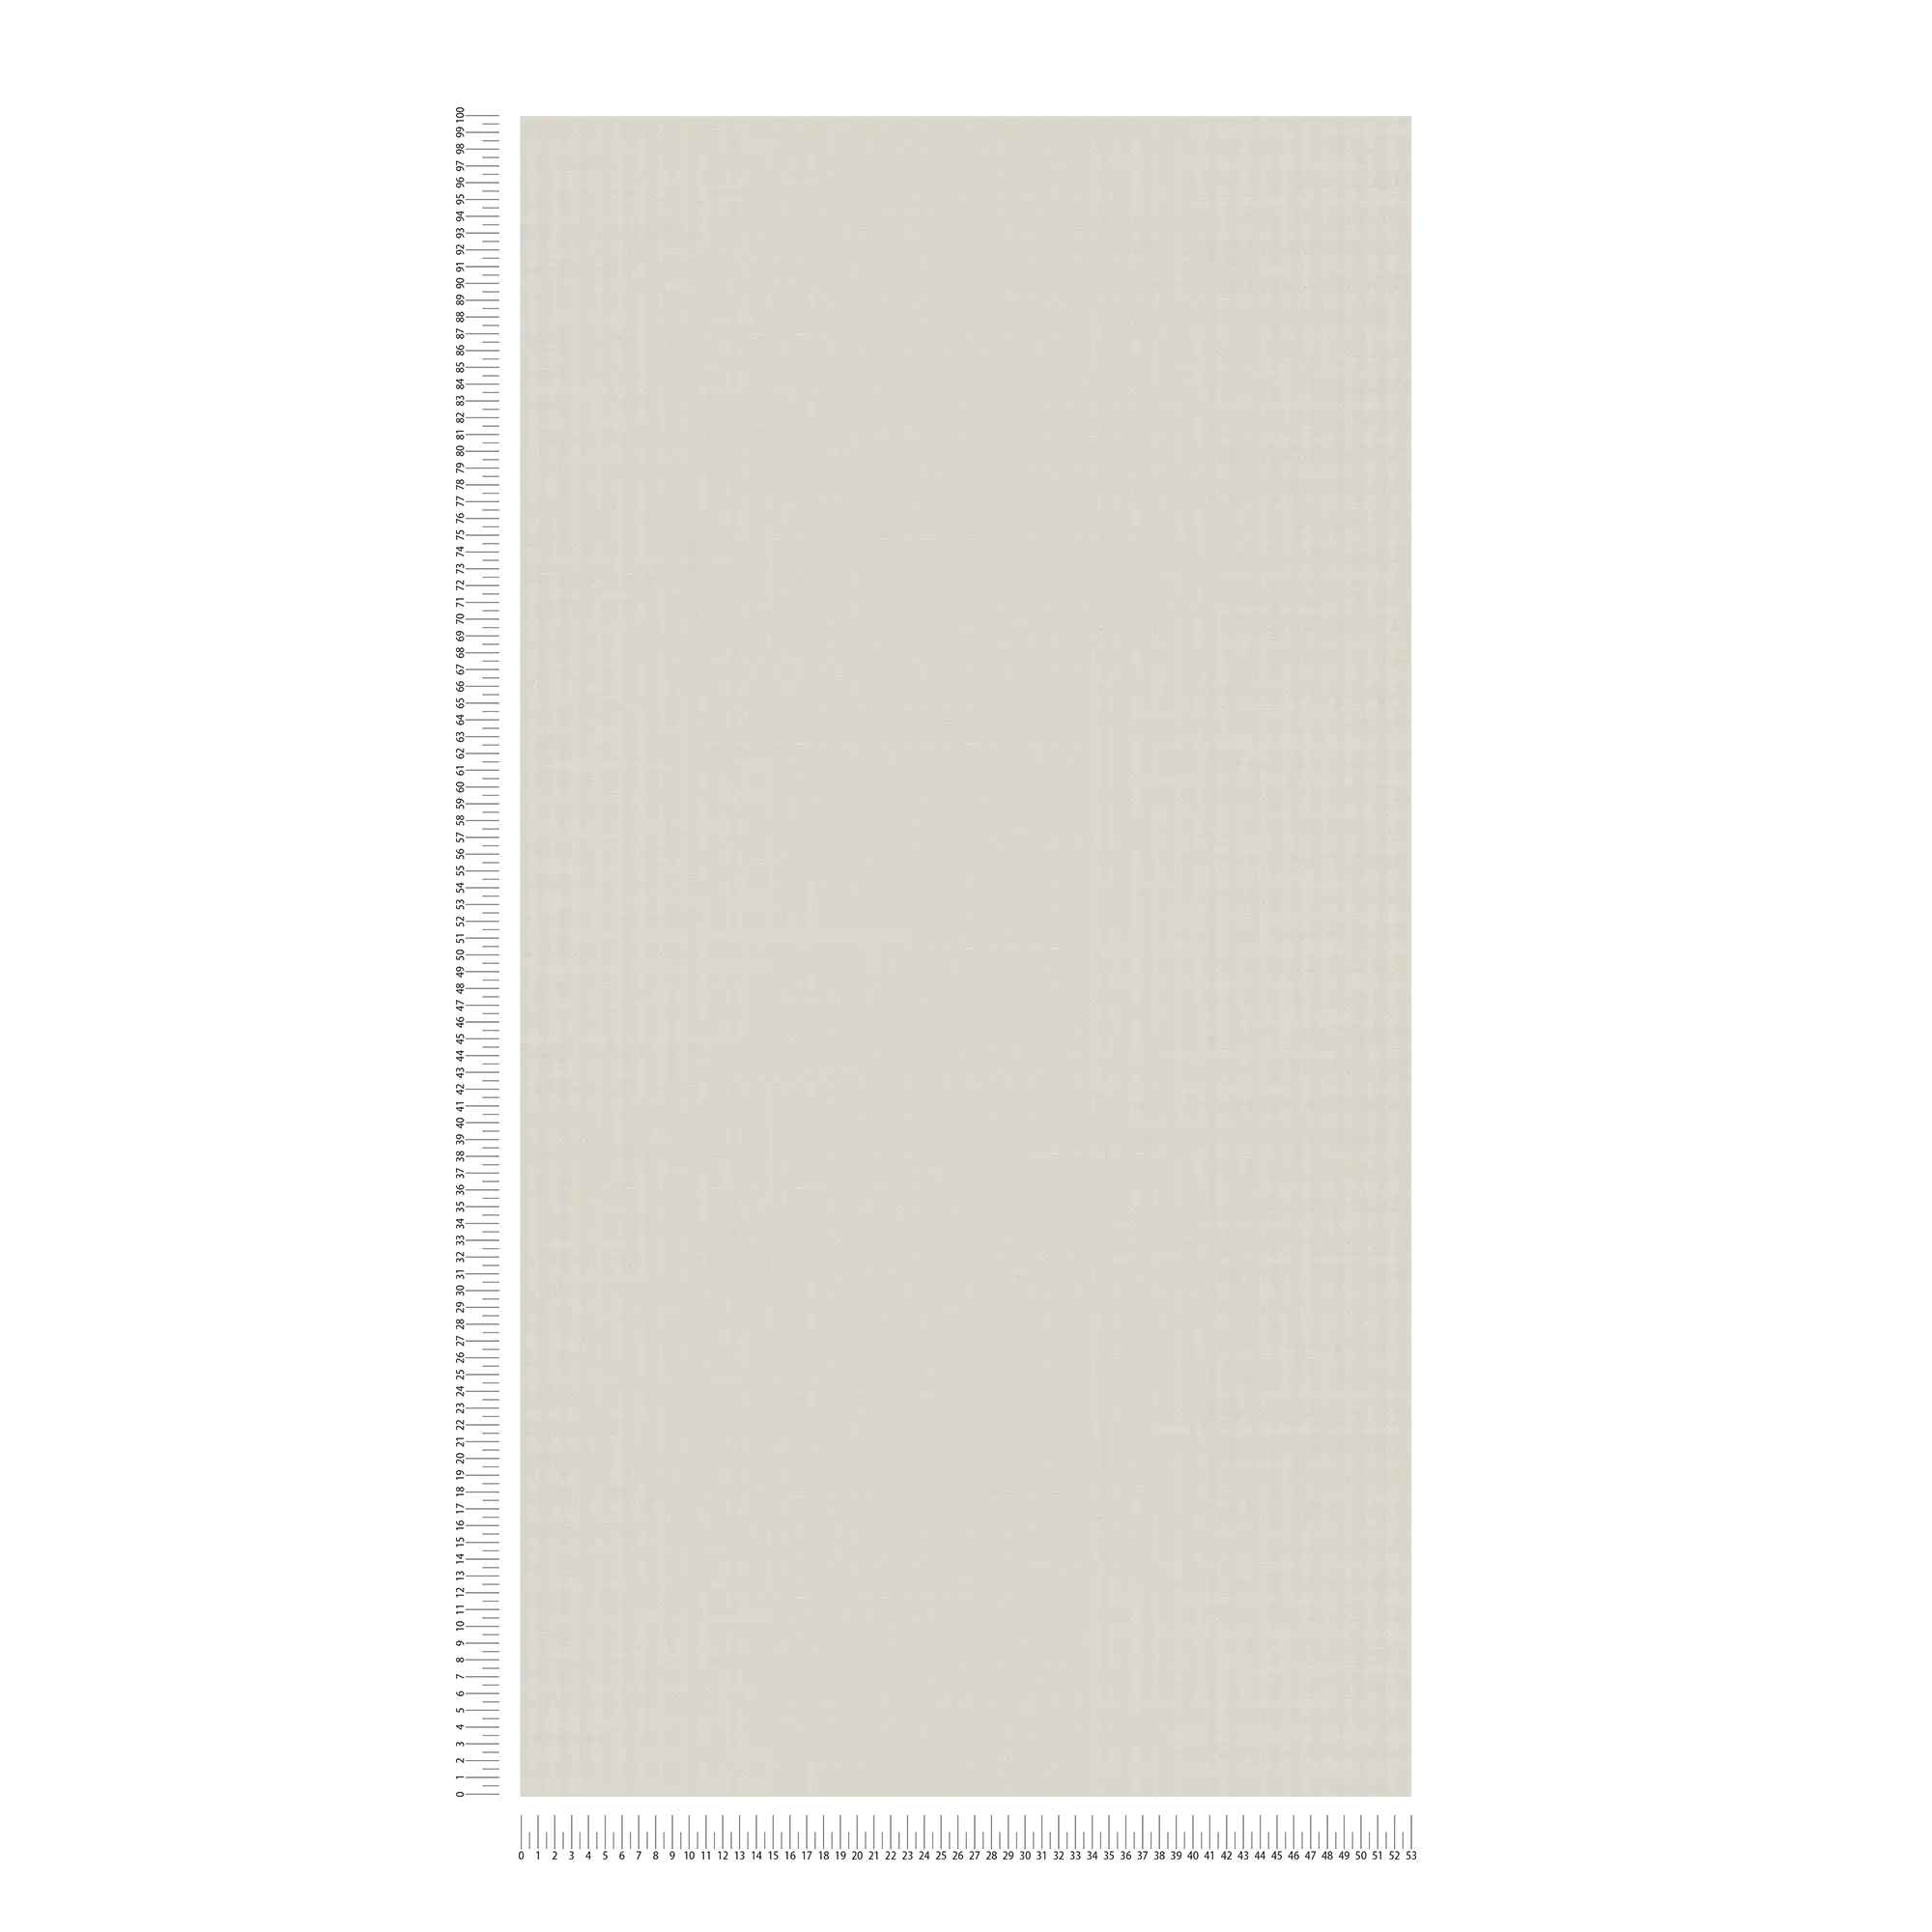             Karl LAGERFELD behangpapier met profiel patroon - beige, grijs
        